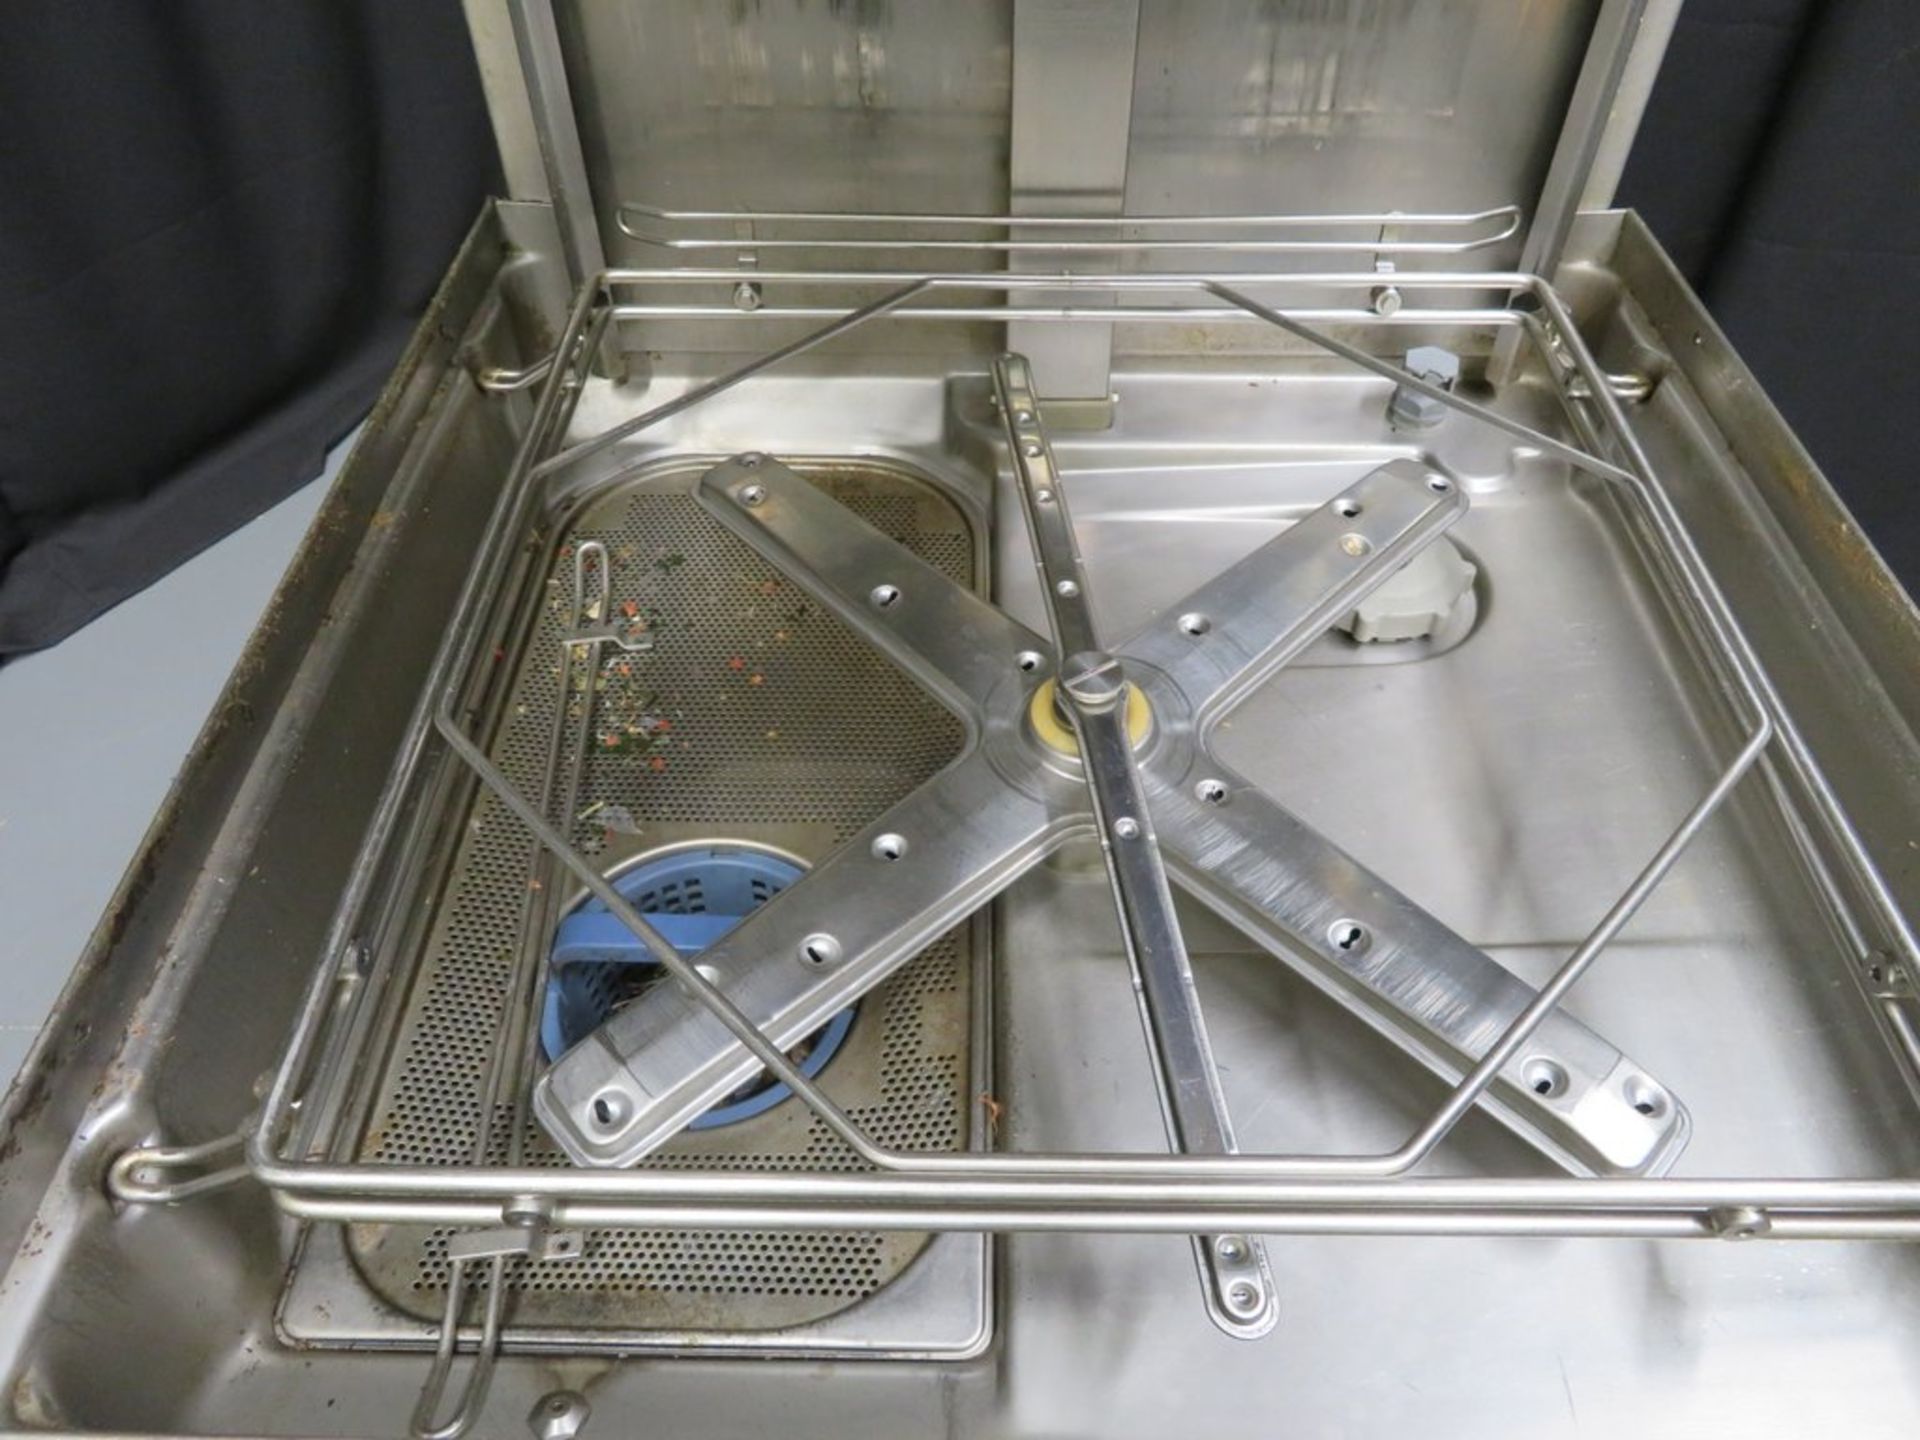 Hobart AMX passthrough dishwasher, 3 phase electric - Image 6 of 8